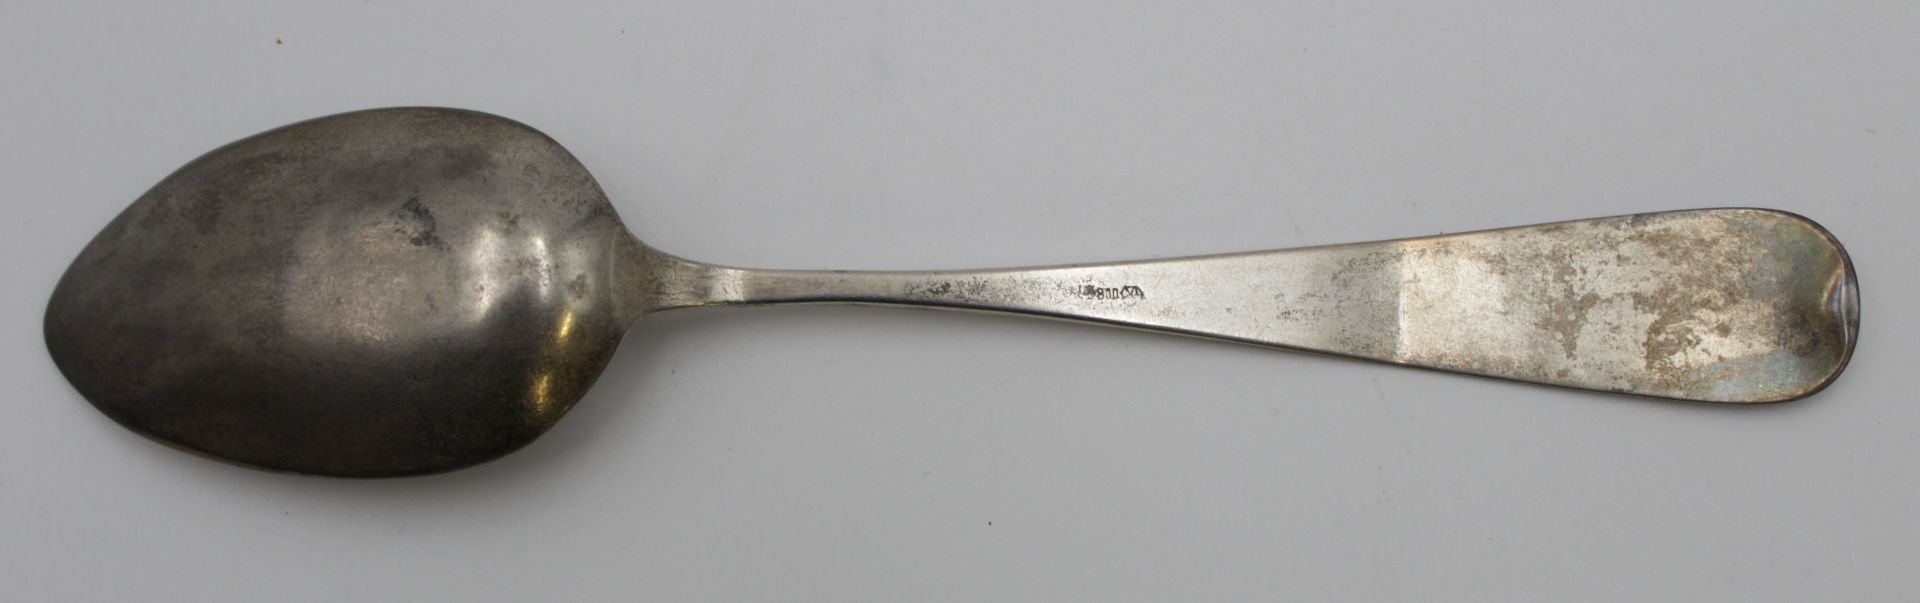 gr. Löffel, 800er Silber, um 1900, ziseliert und monogrammiert, ca. 43gr., Altersspuren, L-22cm. - Bild 3 aus 4